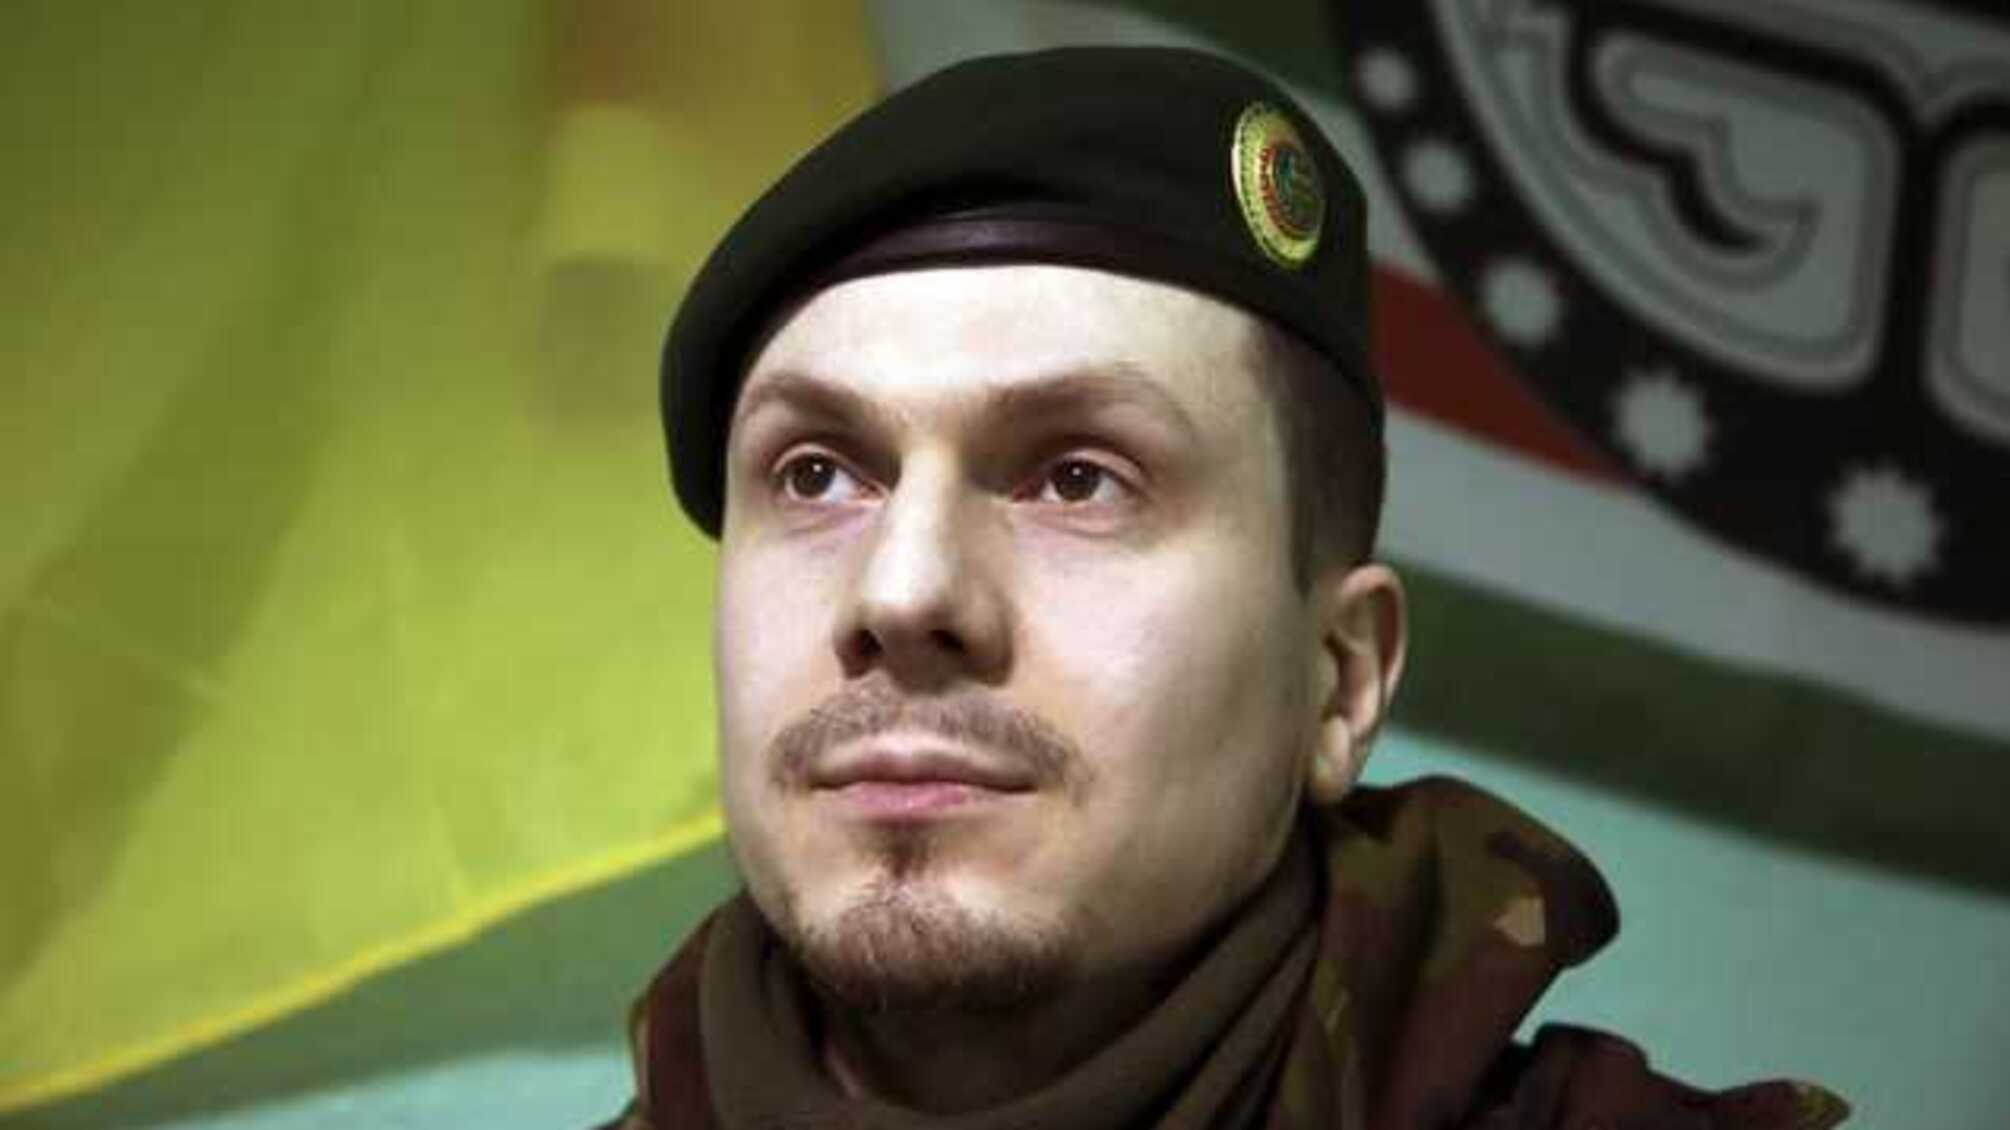 Адам Осмаев впервые прокомментировал подготовку покушения на него и задержание генерала СБУ Шайтанова